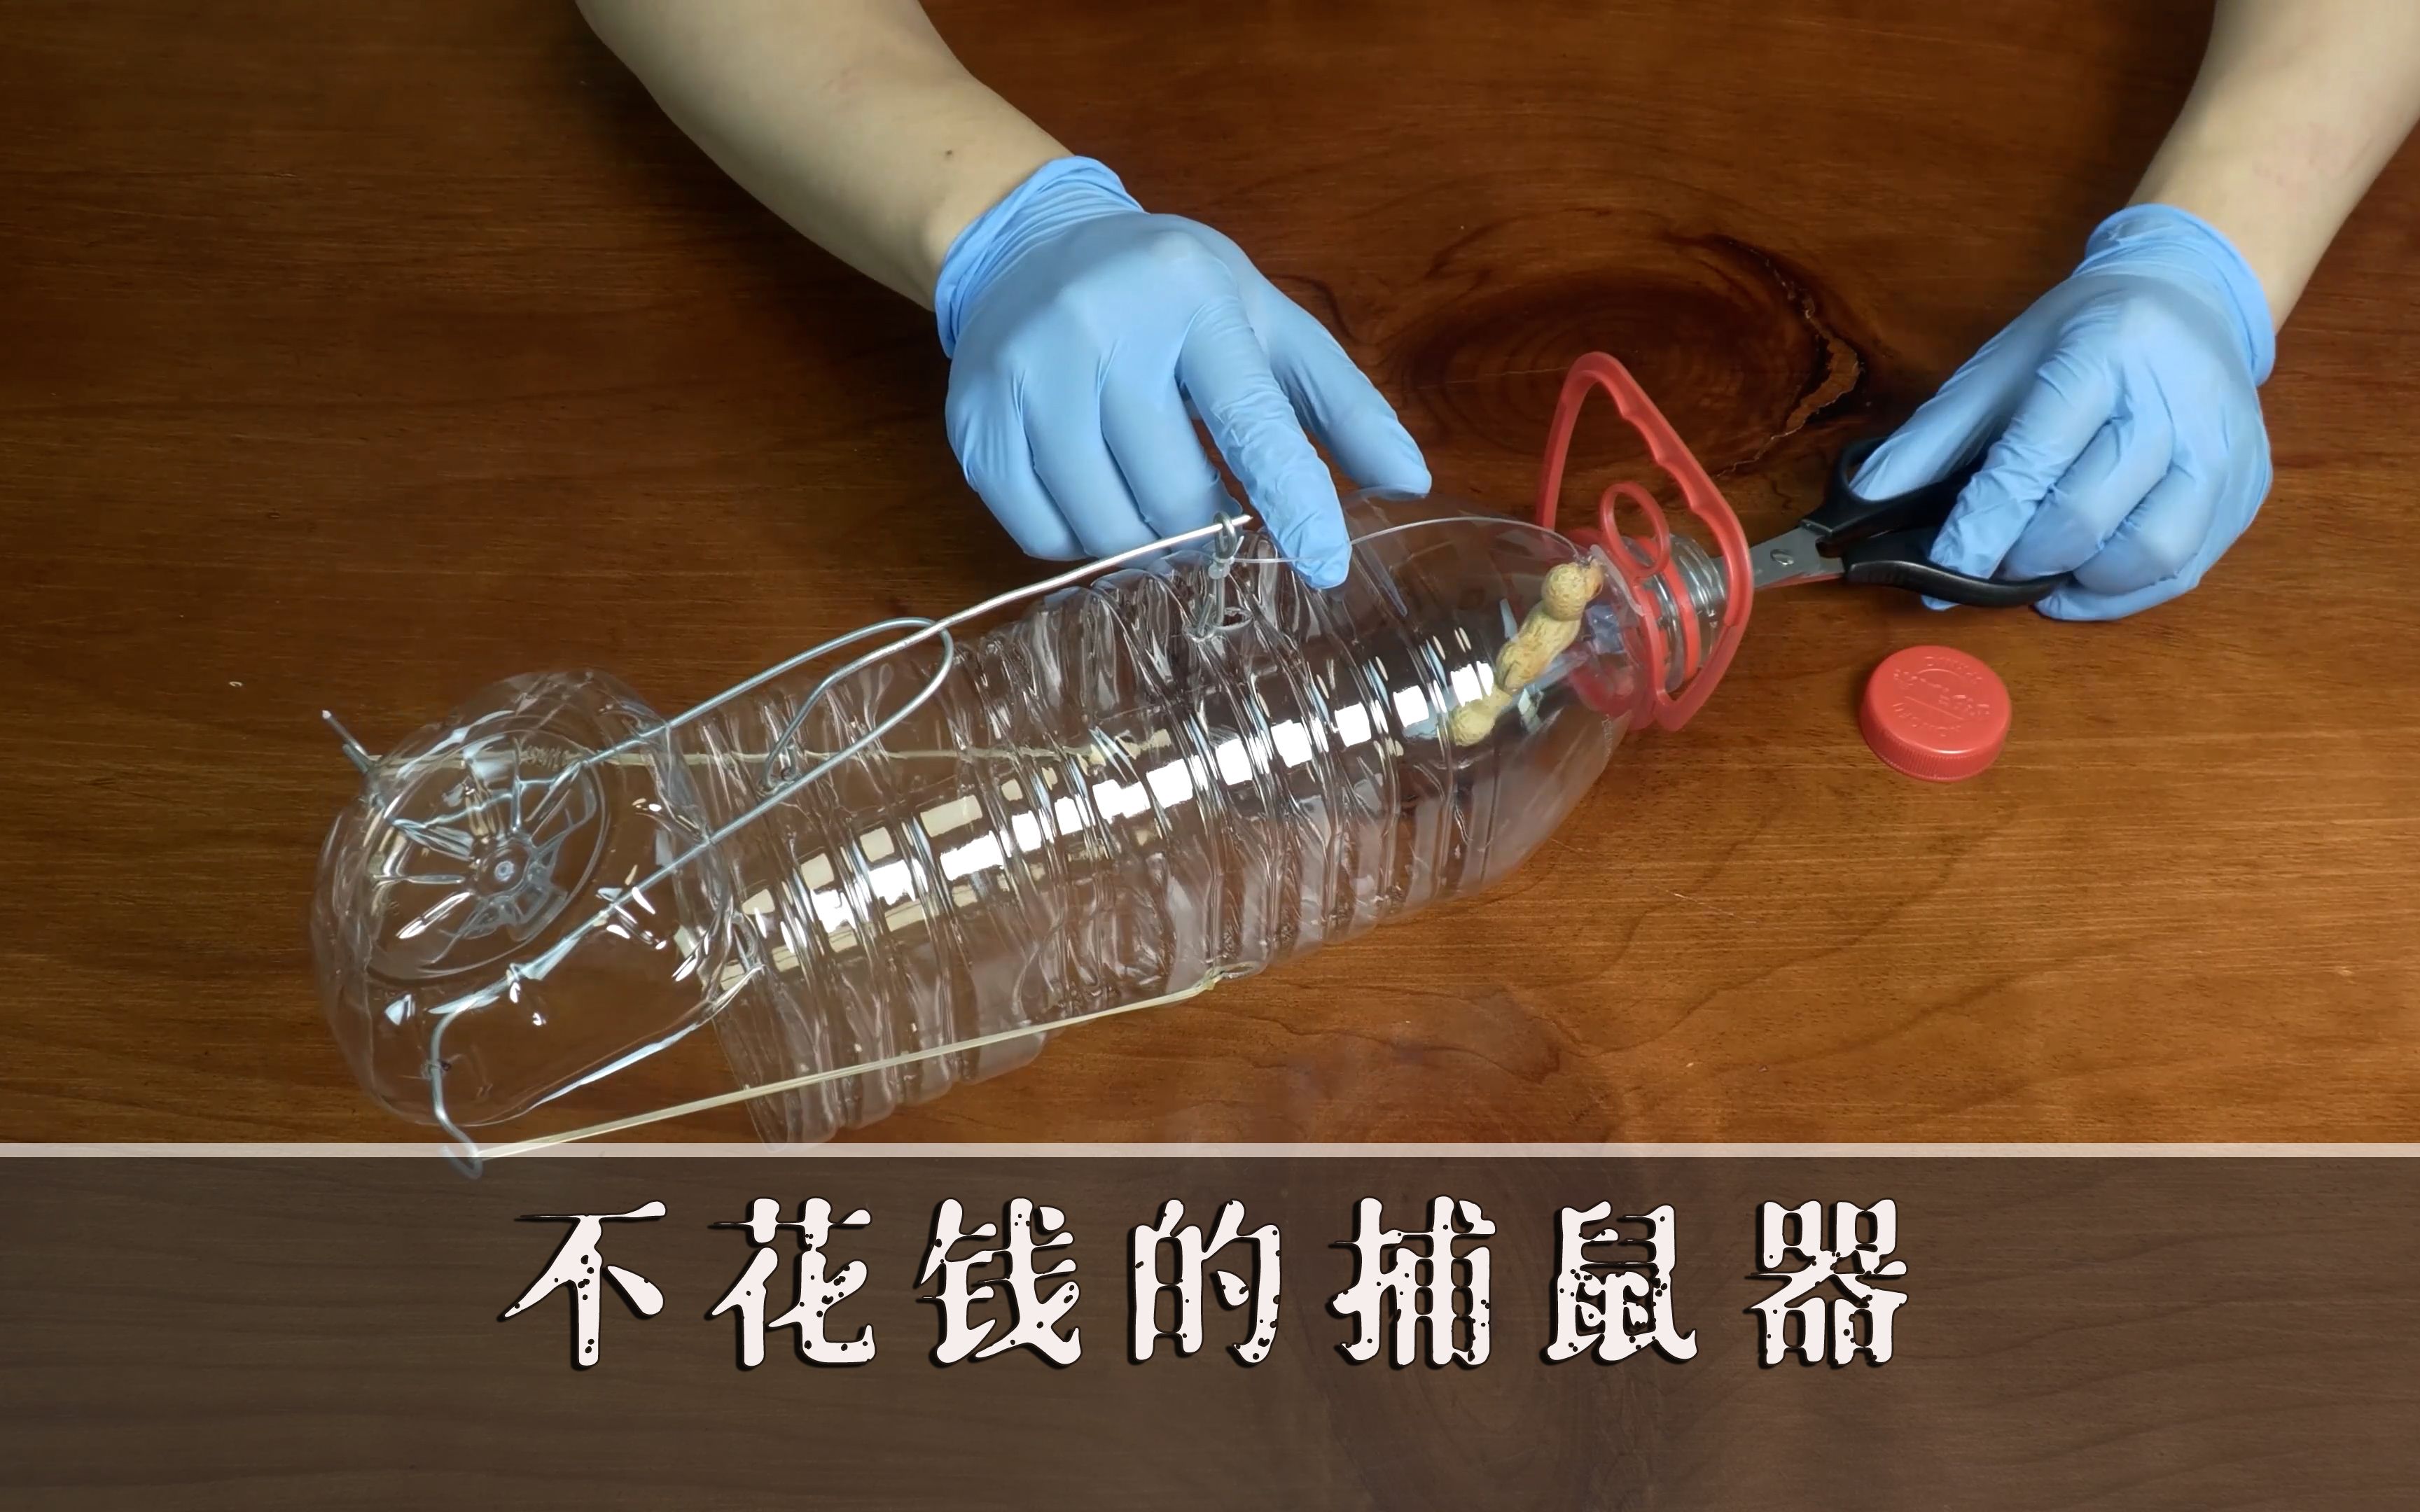 用塑料瓶制作简易捕鼠器,看完就会